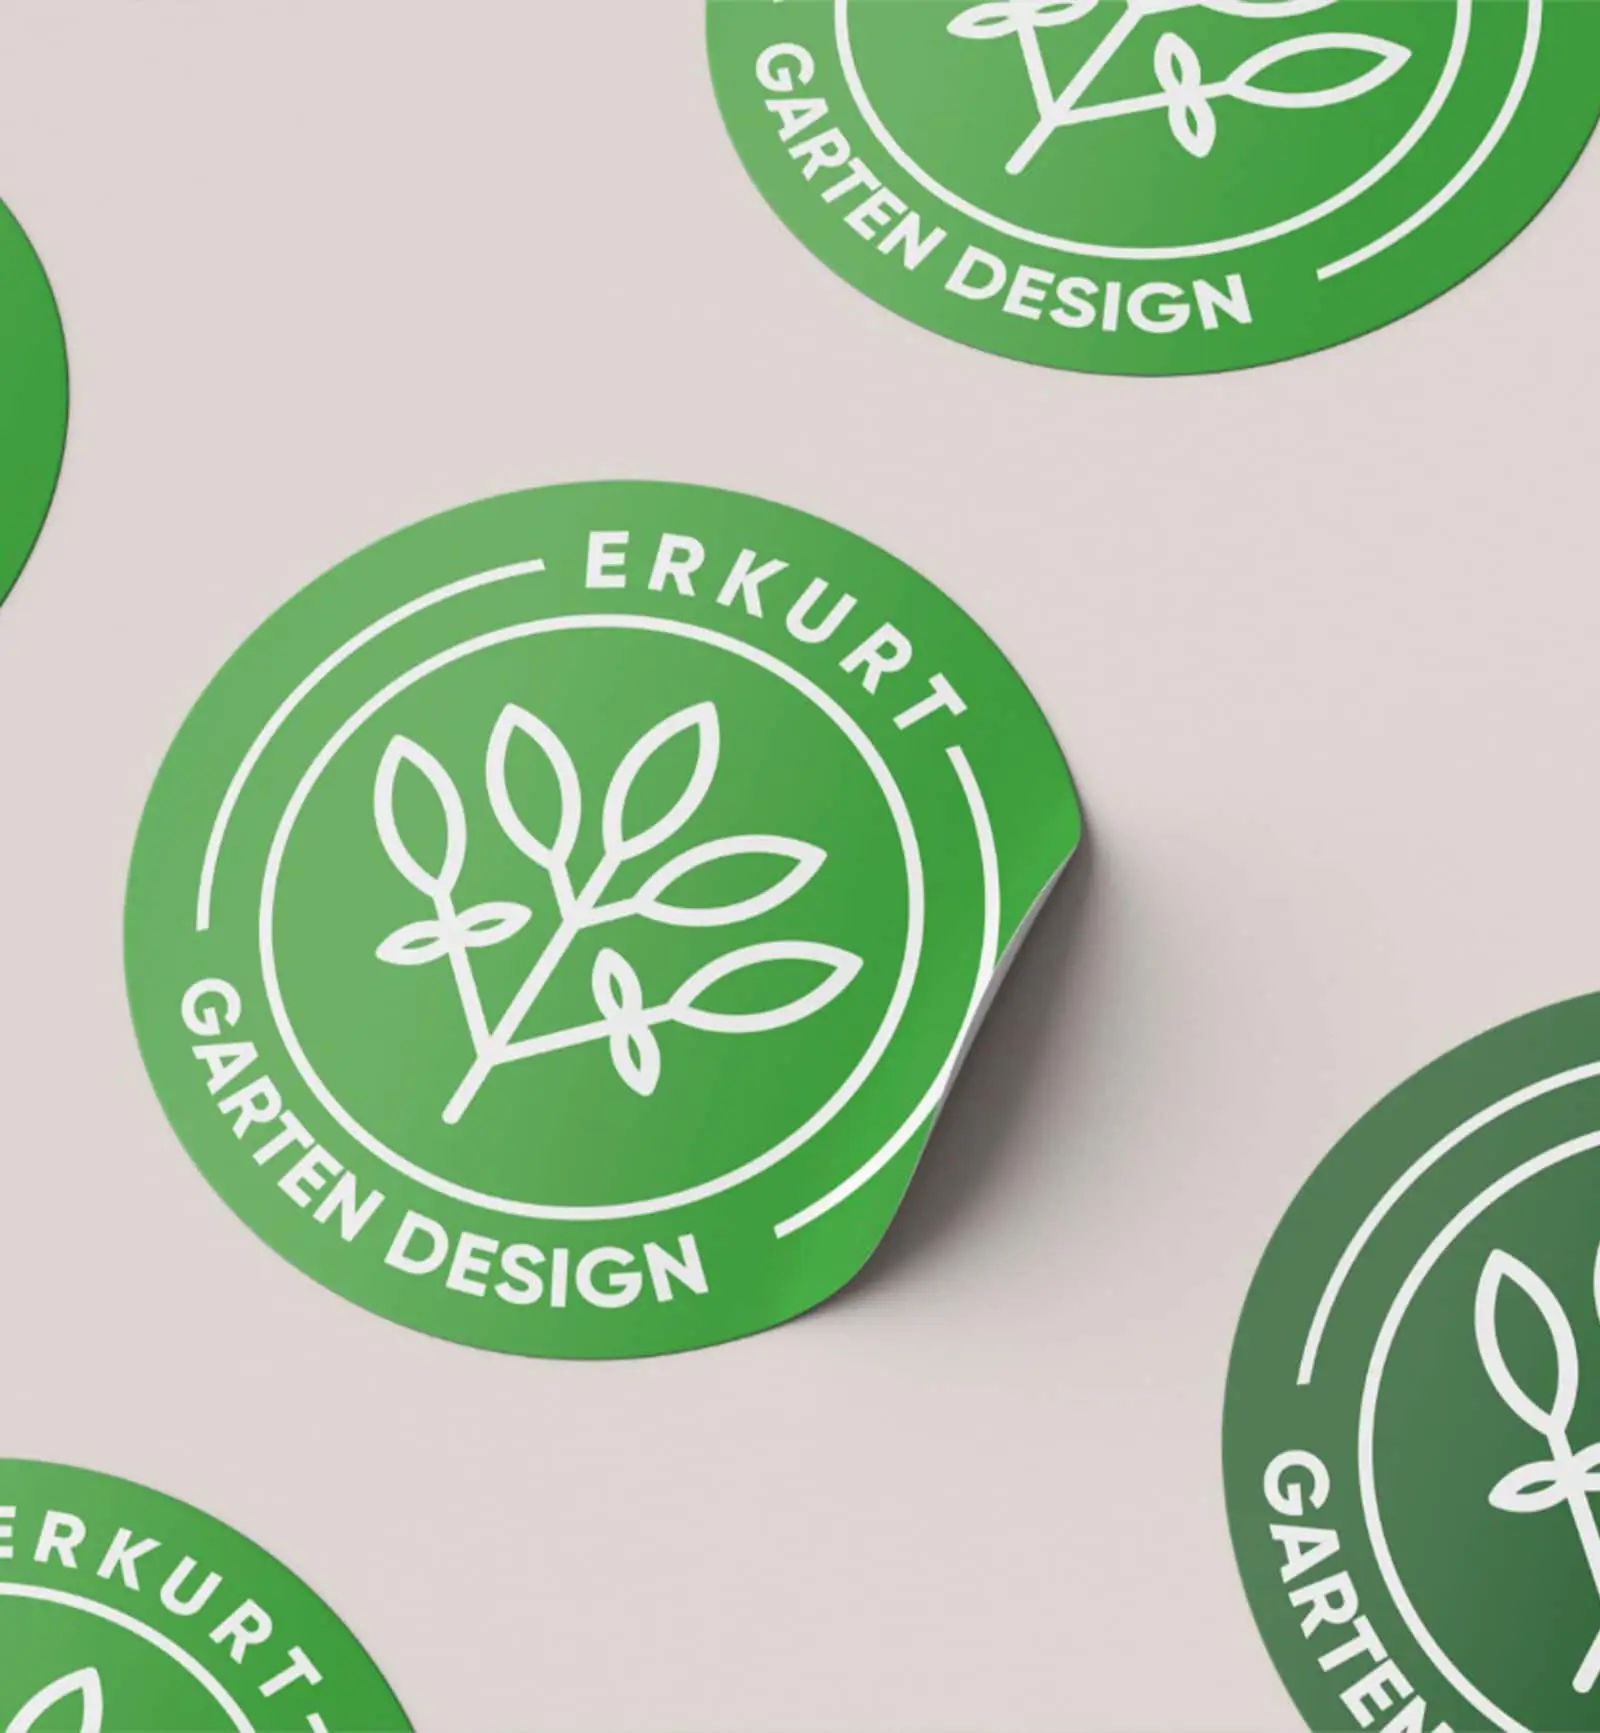 Runde Aufkleber von Erkurt Gartengestaltung mit dem grünen Logo, die die Markenidentität repräsentieren.